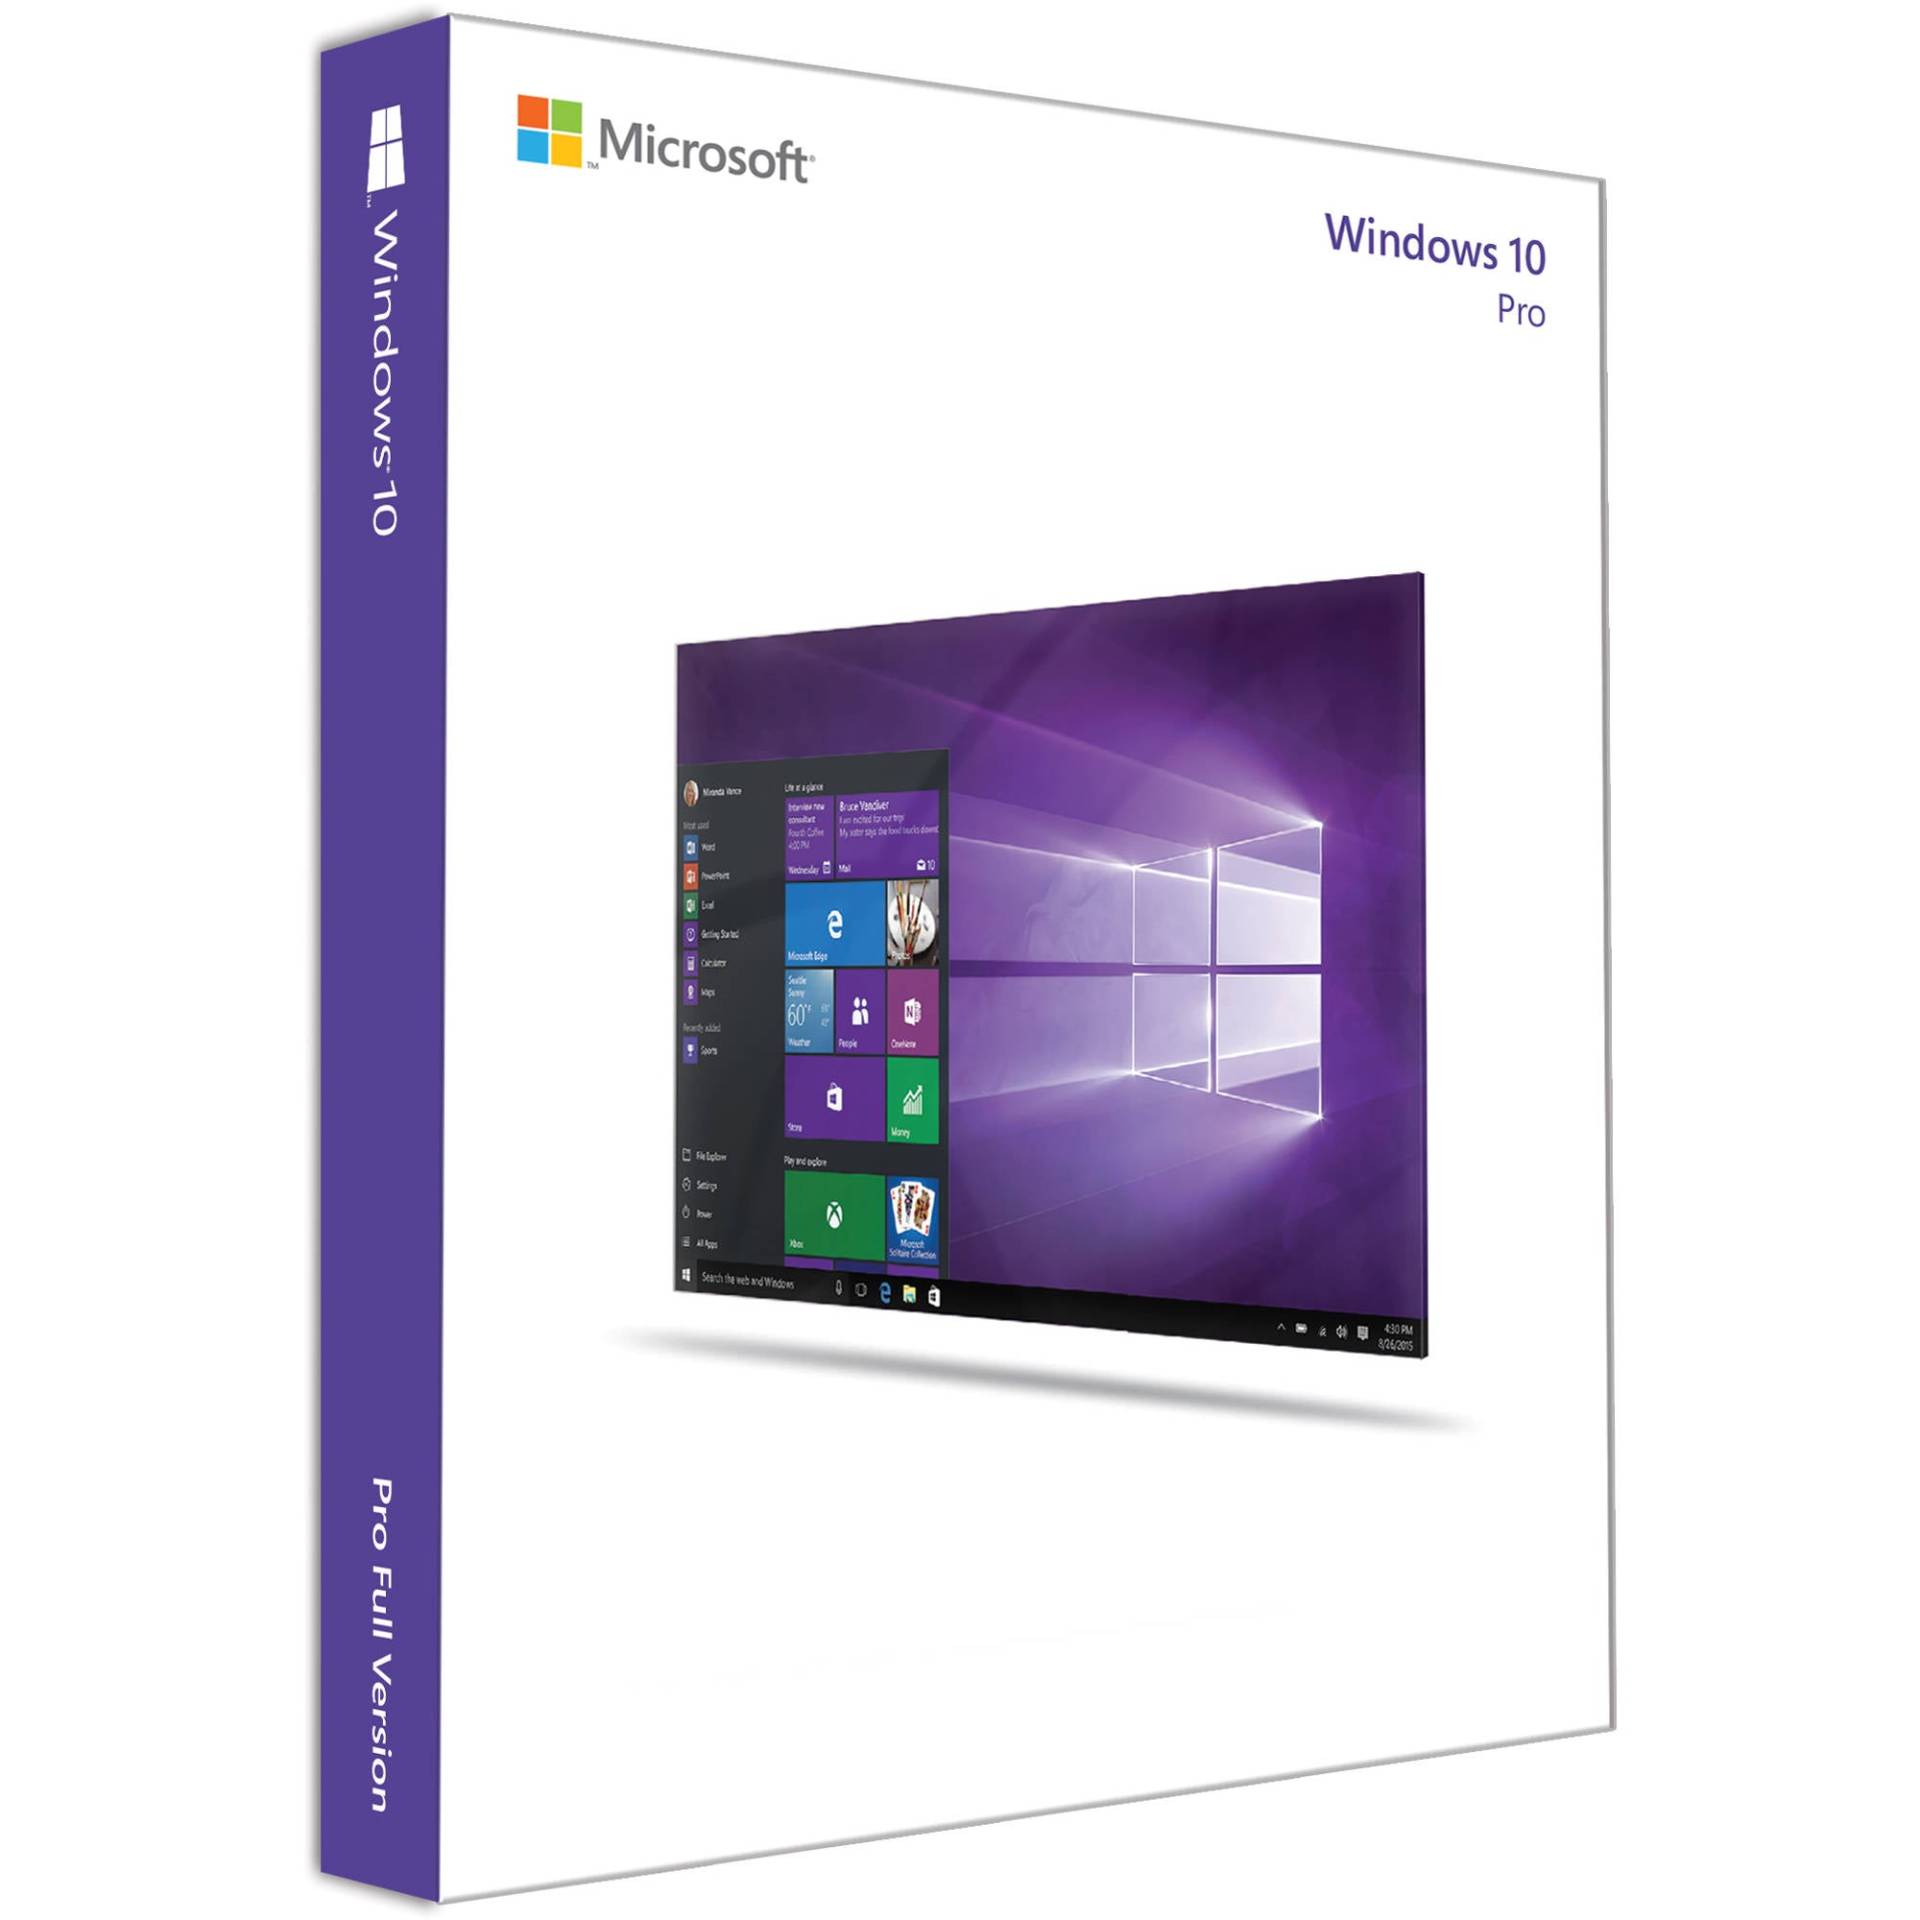 WINDOWS 10 PRO - Produktschlüssel - Vollversion - Sofort-Download - 1 PC von Microsoft